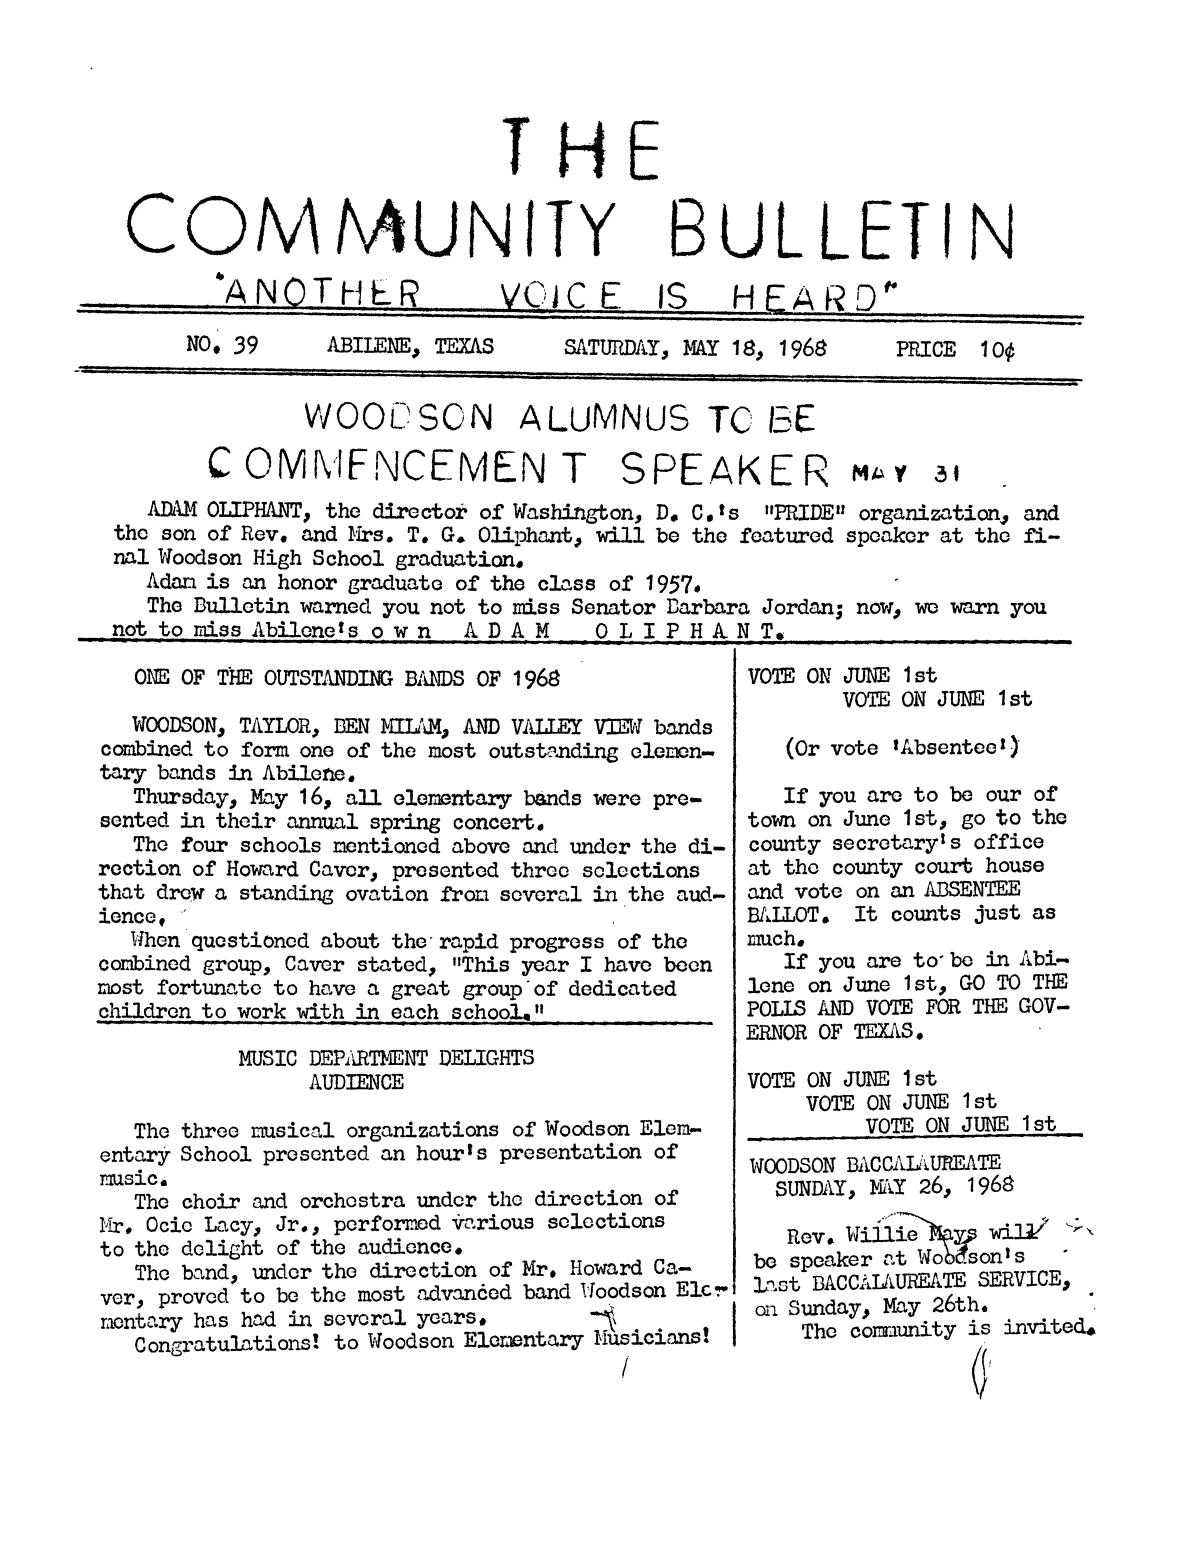 The Community Bulletin (Abilene, Texas), No. 39, Saturday, May 18, 1968
                                                
                                                    1
                                                